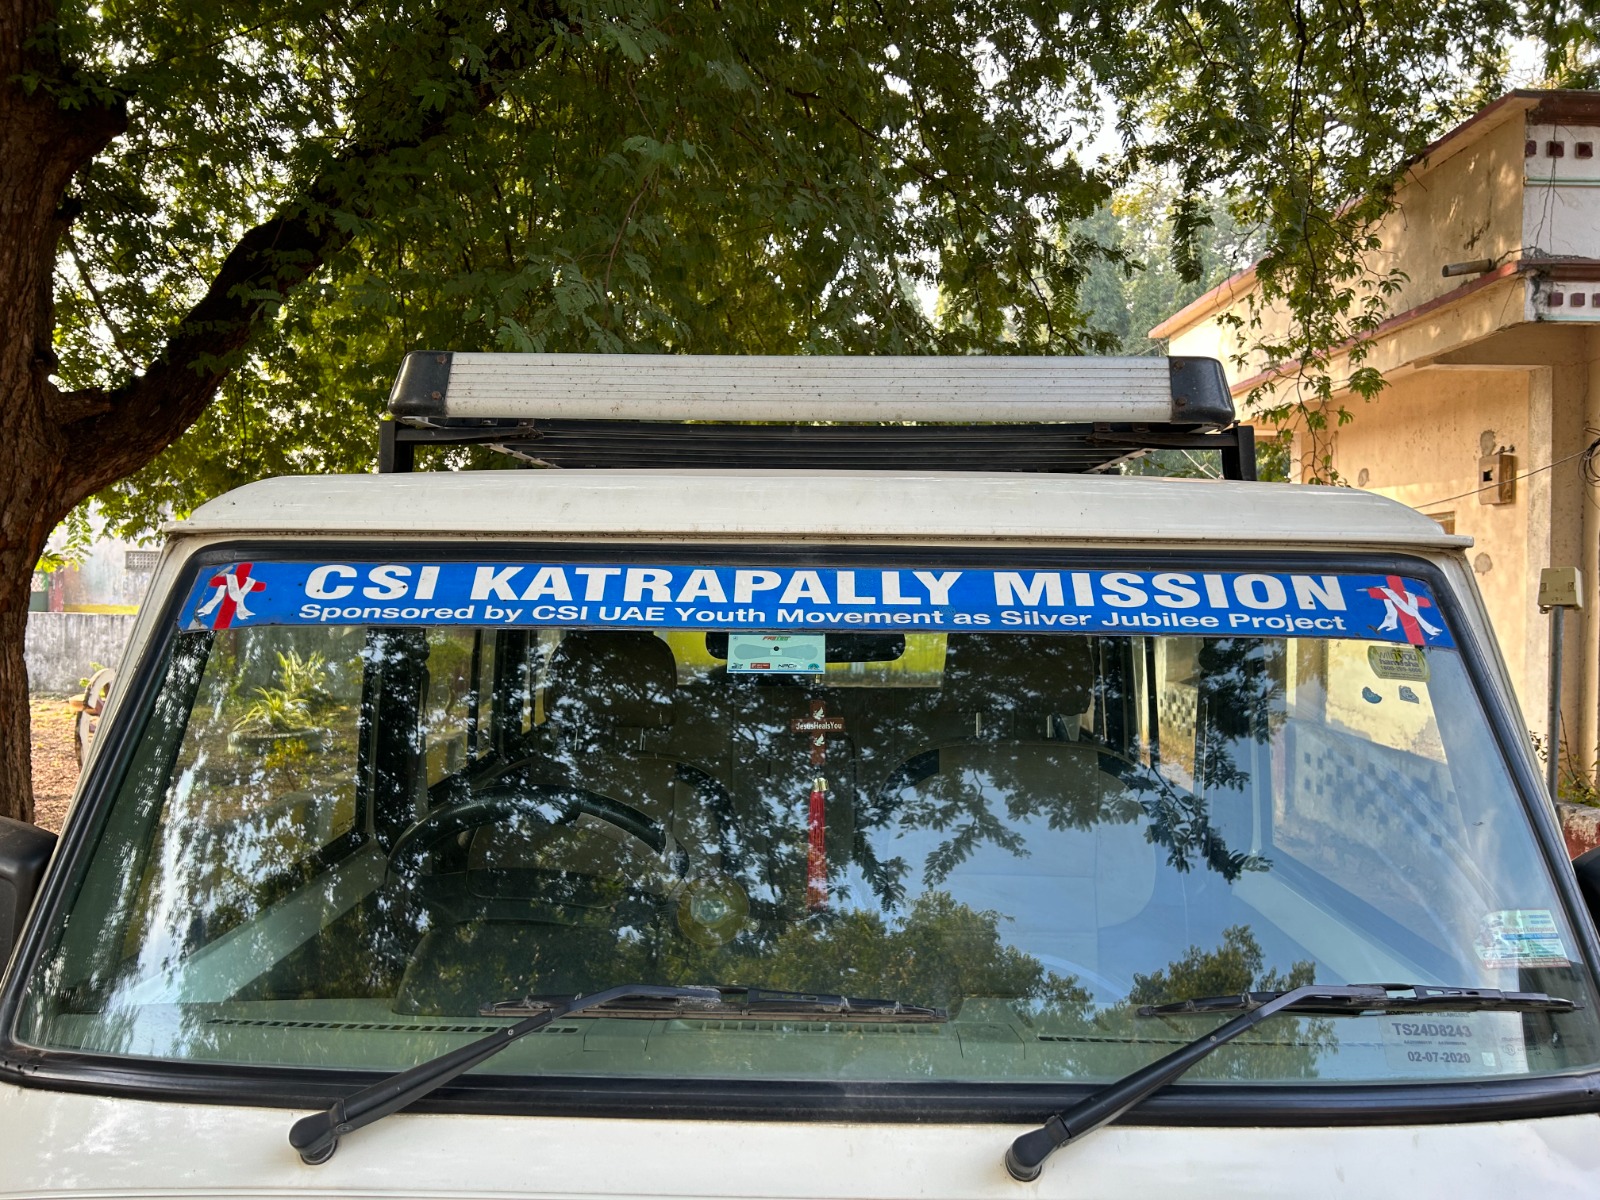 CSI Parkal Mission, Parkal